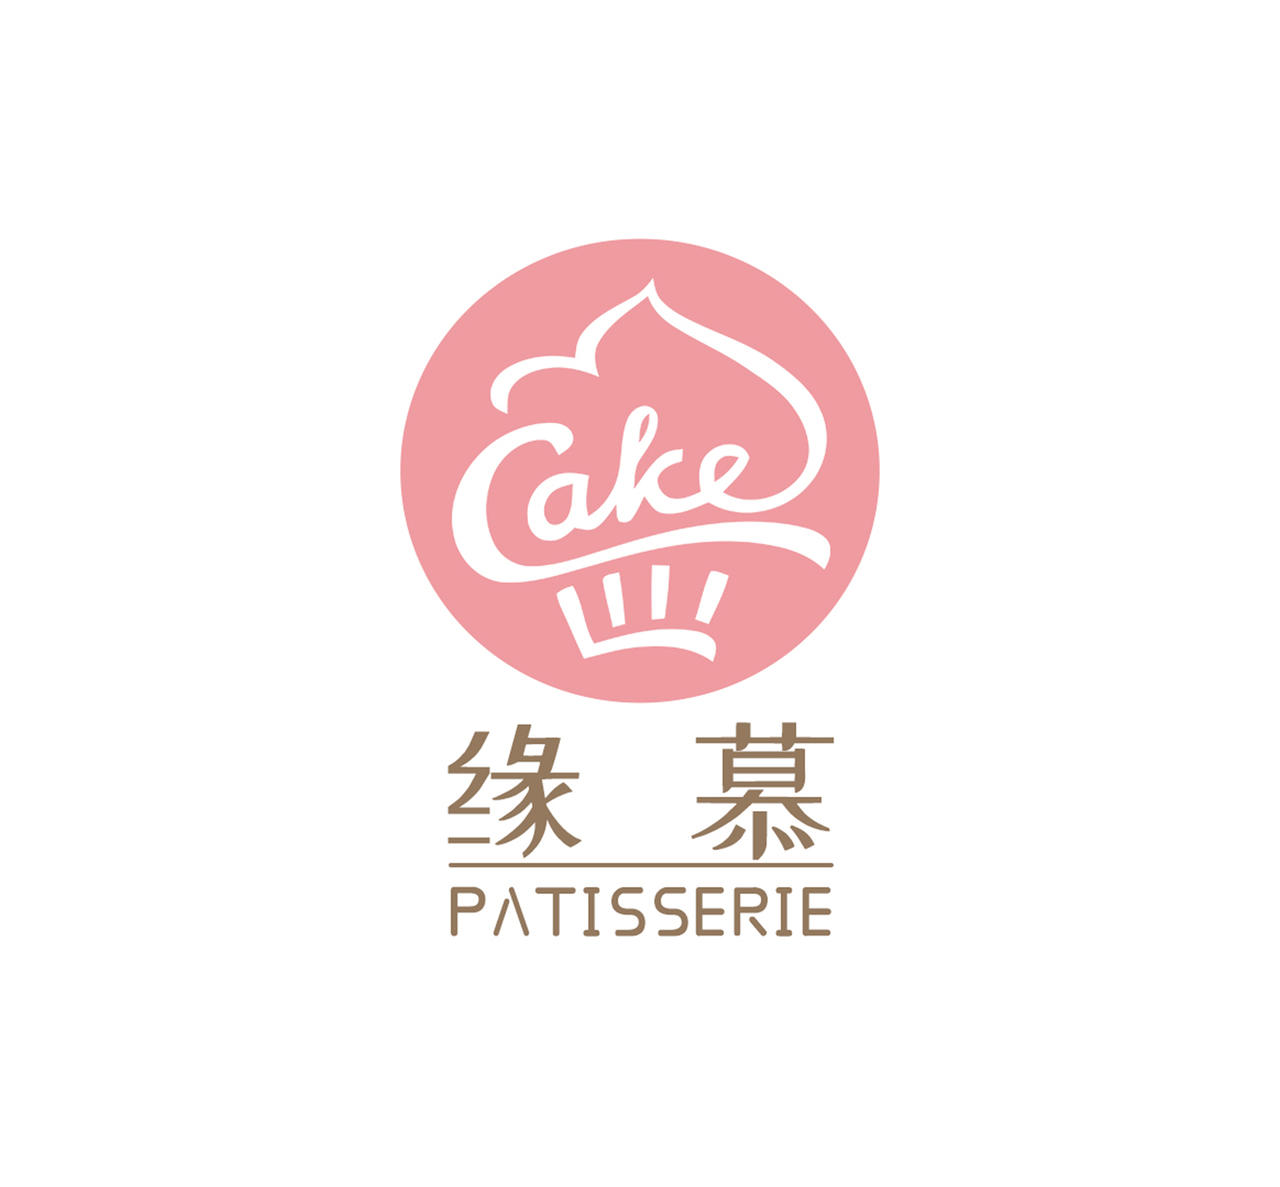 缘慕cake甜品蛋糕店烘焙店logo甜品logo